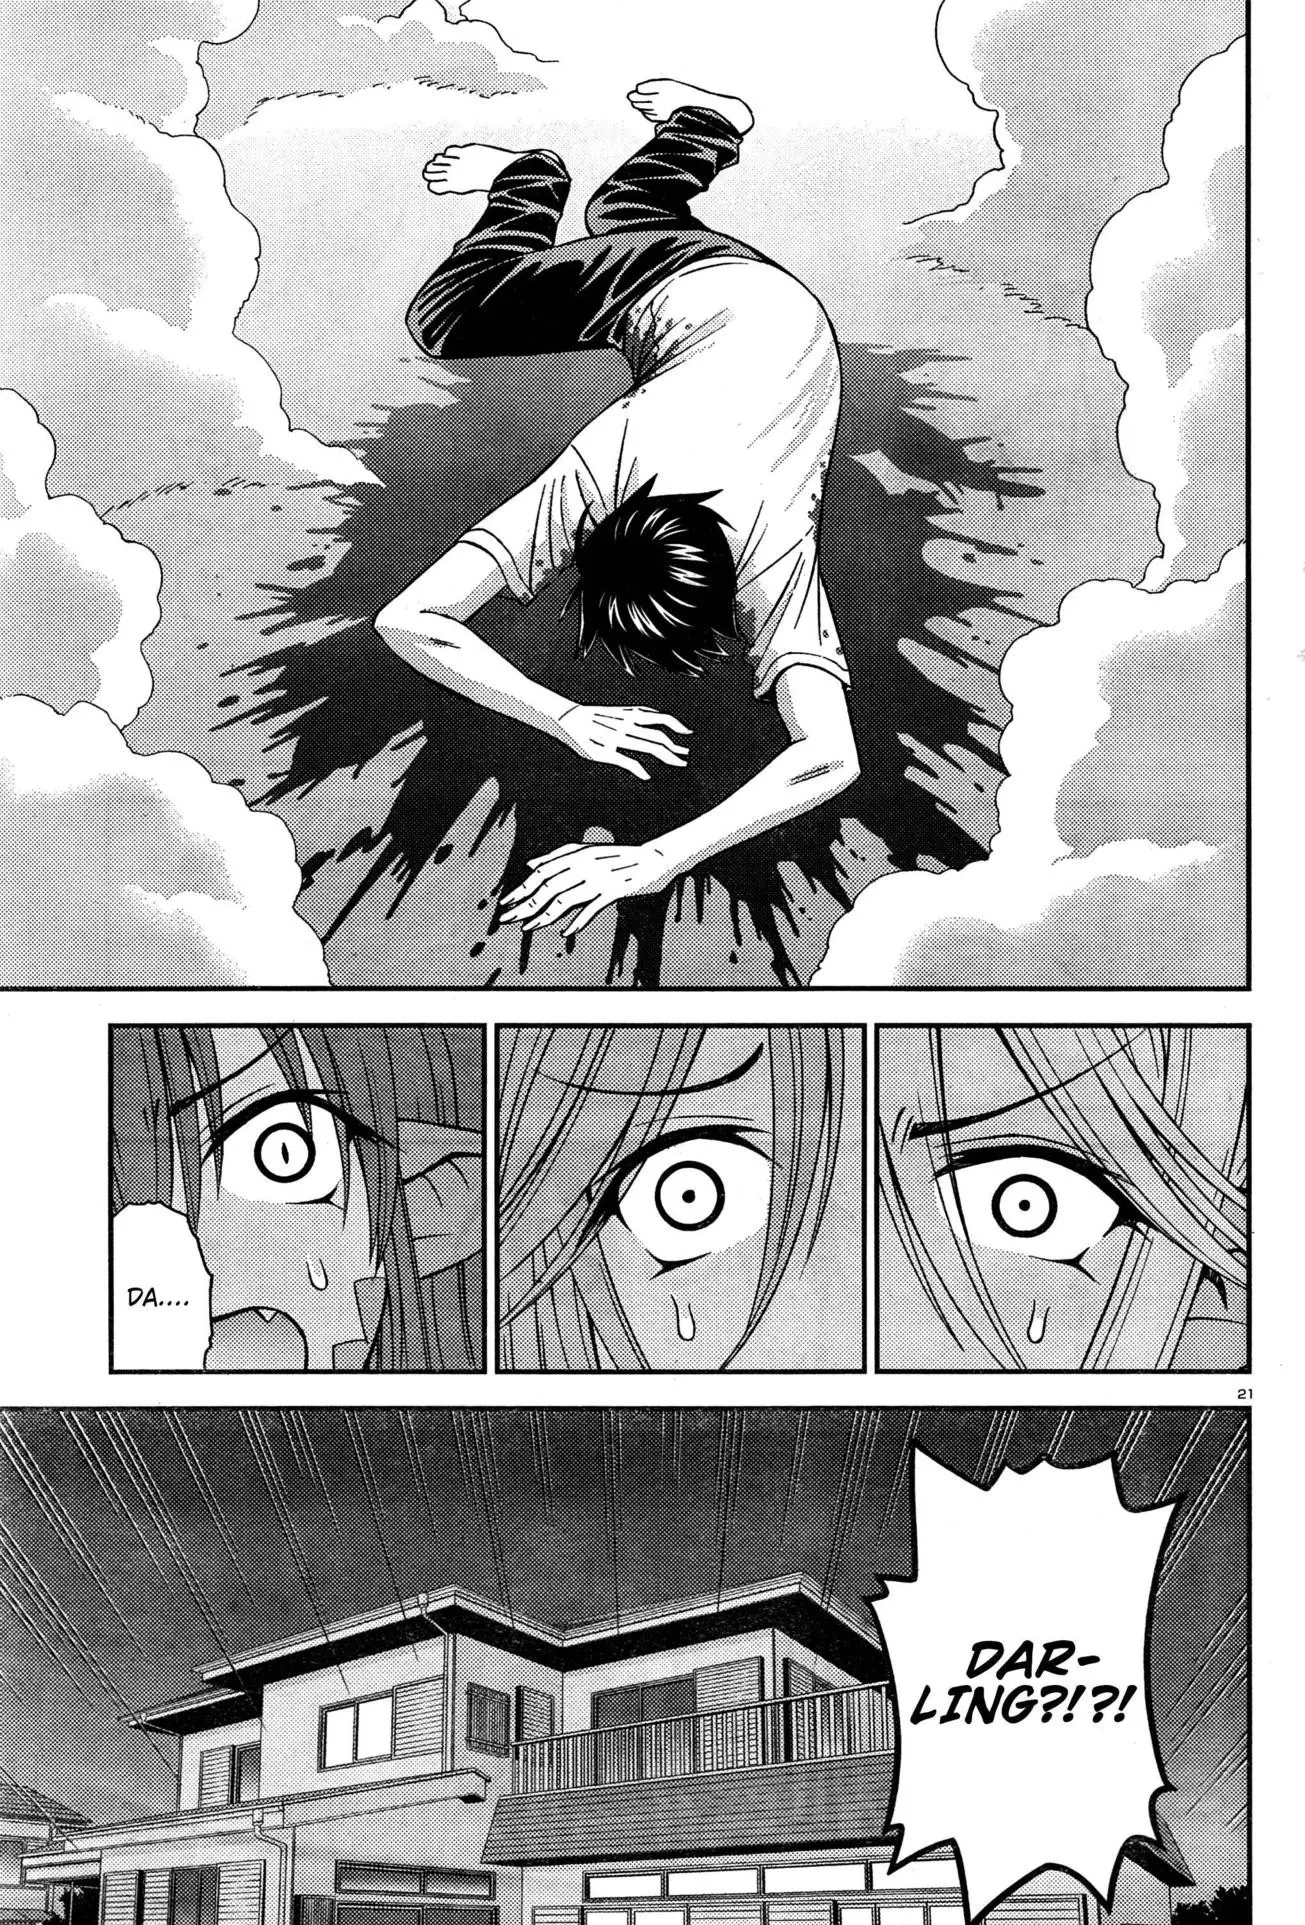 Monster Musume no Iru Nichijou - 6 page p_00025